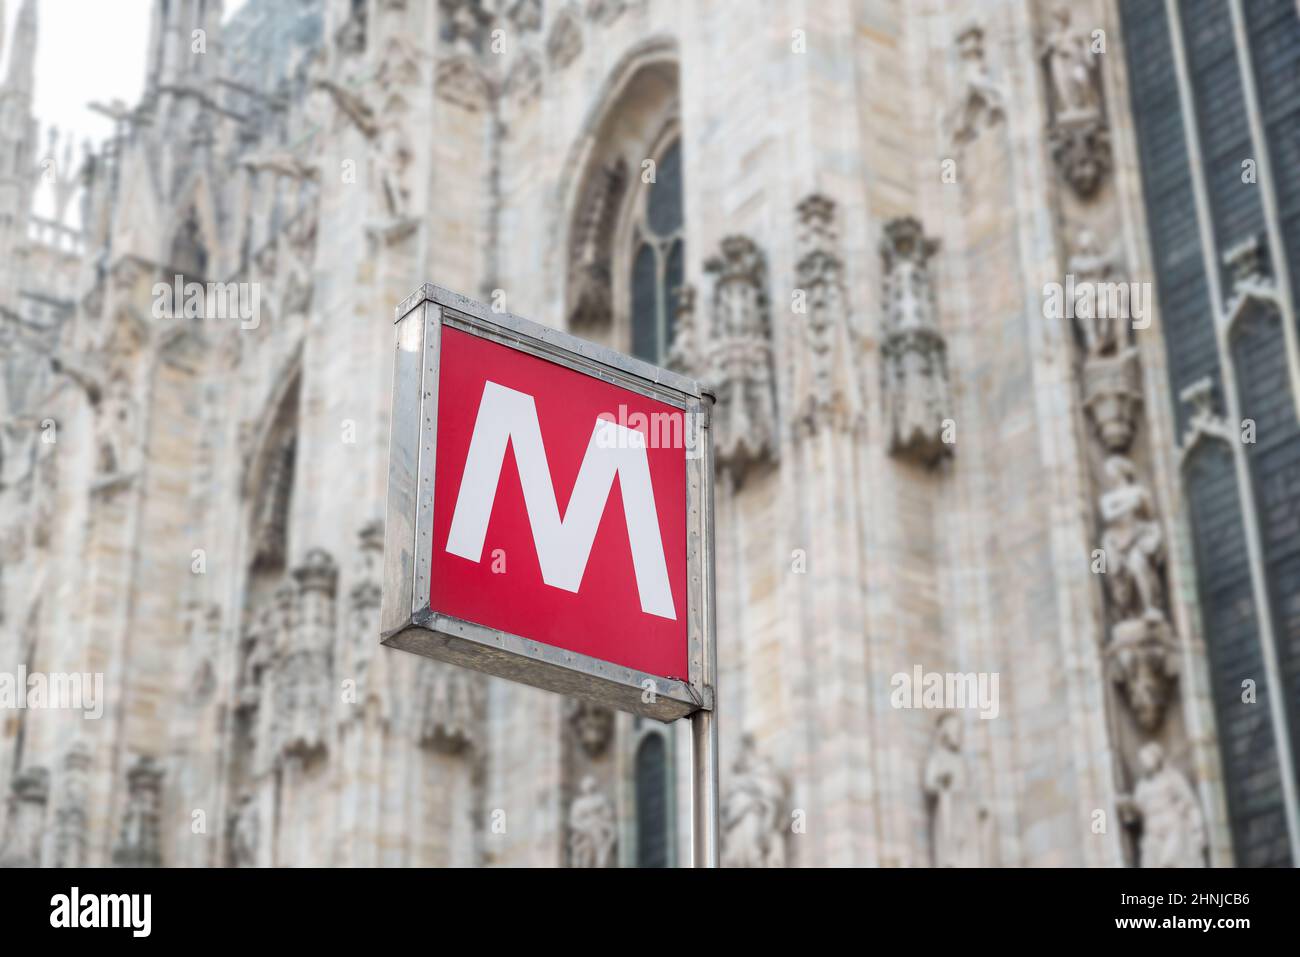 Señal roja del metro en la estación de metro, letra M. Concepto de transporte urbano. Piazza del Duomo, con la borrosa Catedral de Milán en el fondo, Italia Foto de stock